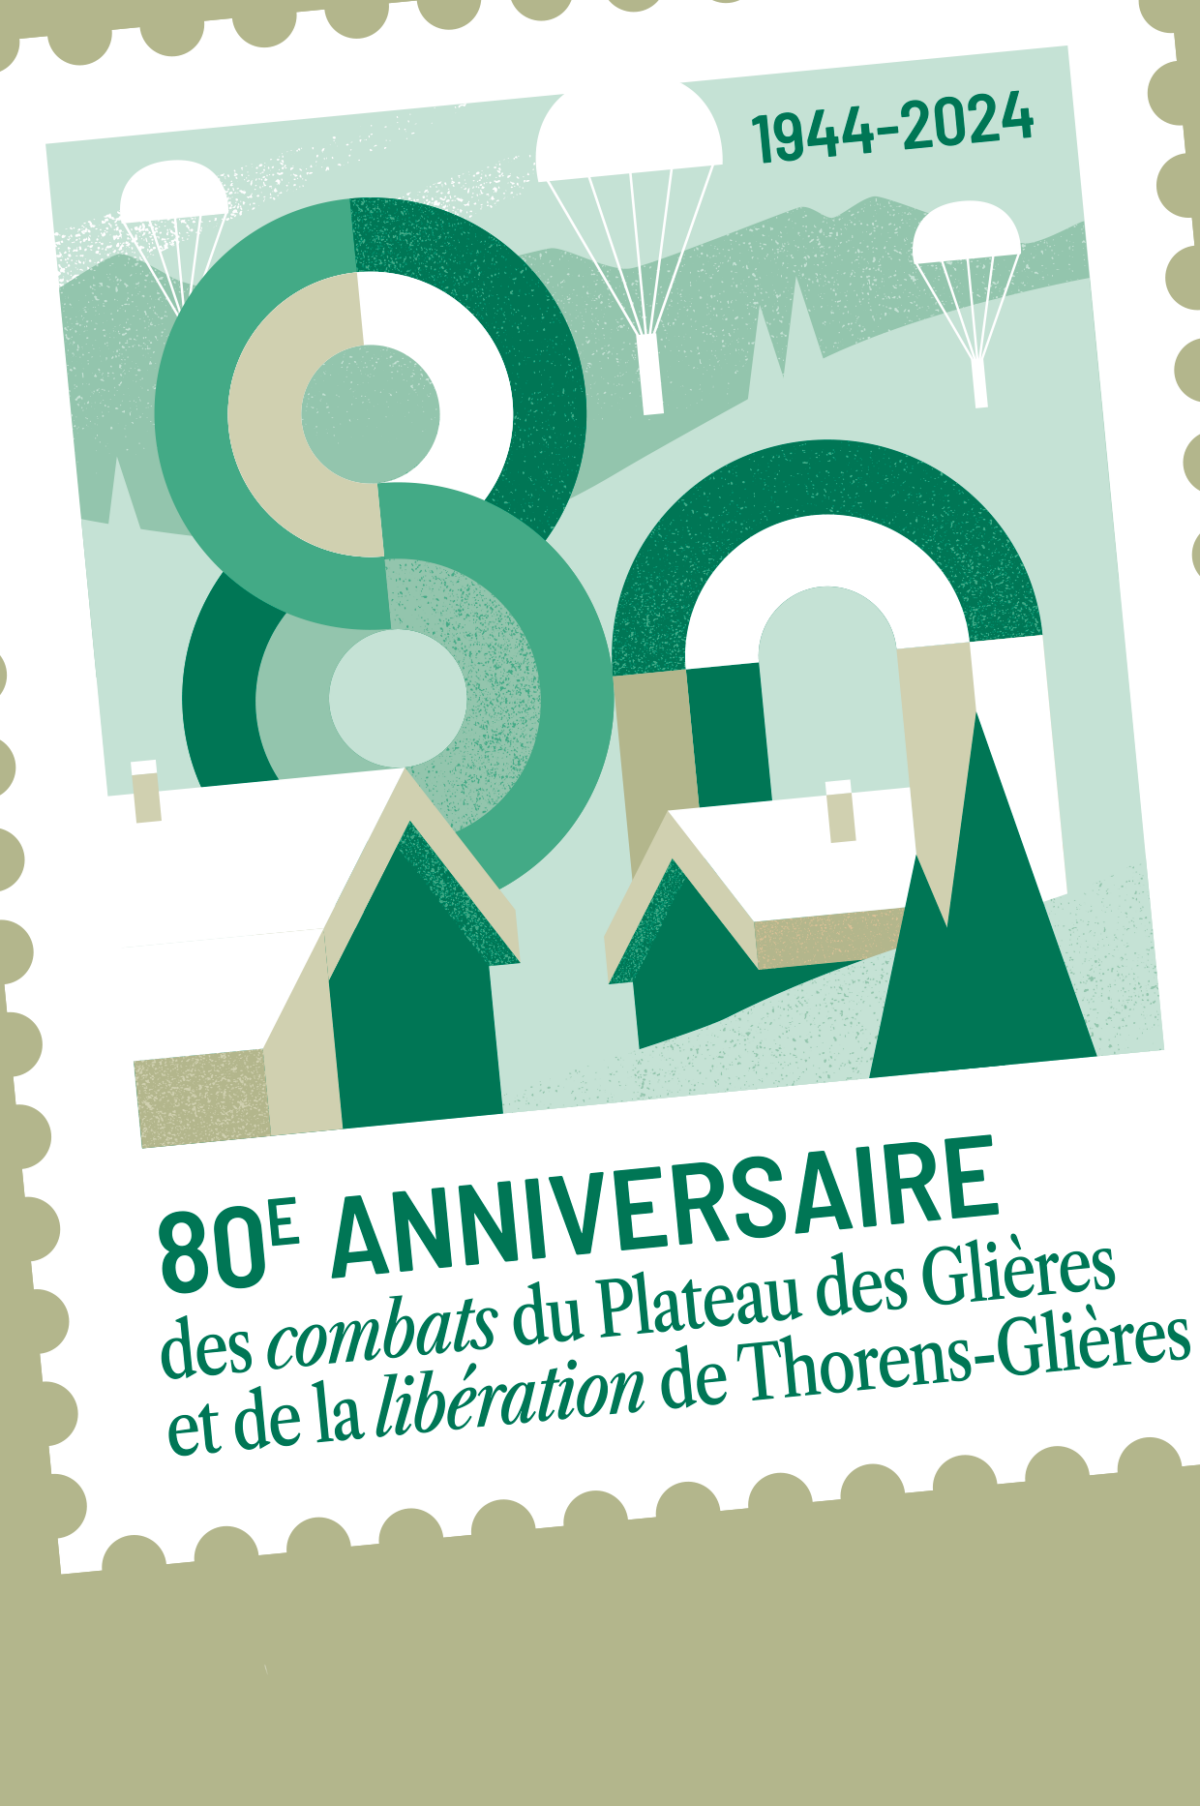 80e anniversaire de la libération de Thorens-Glières